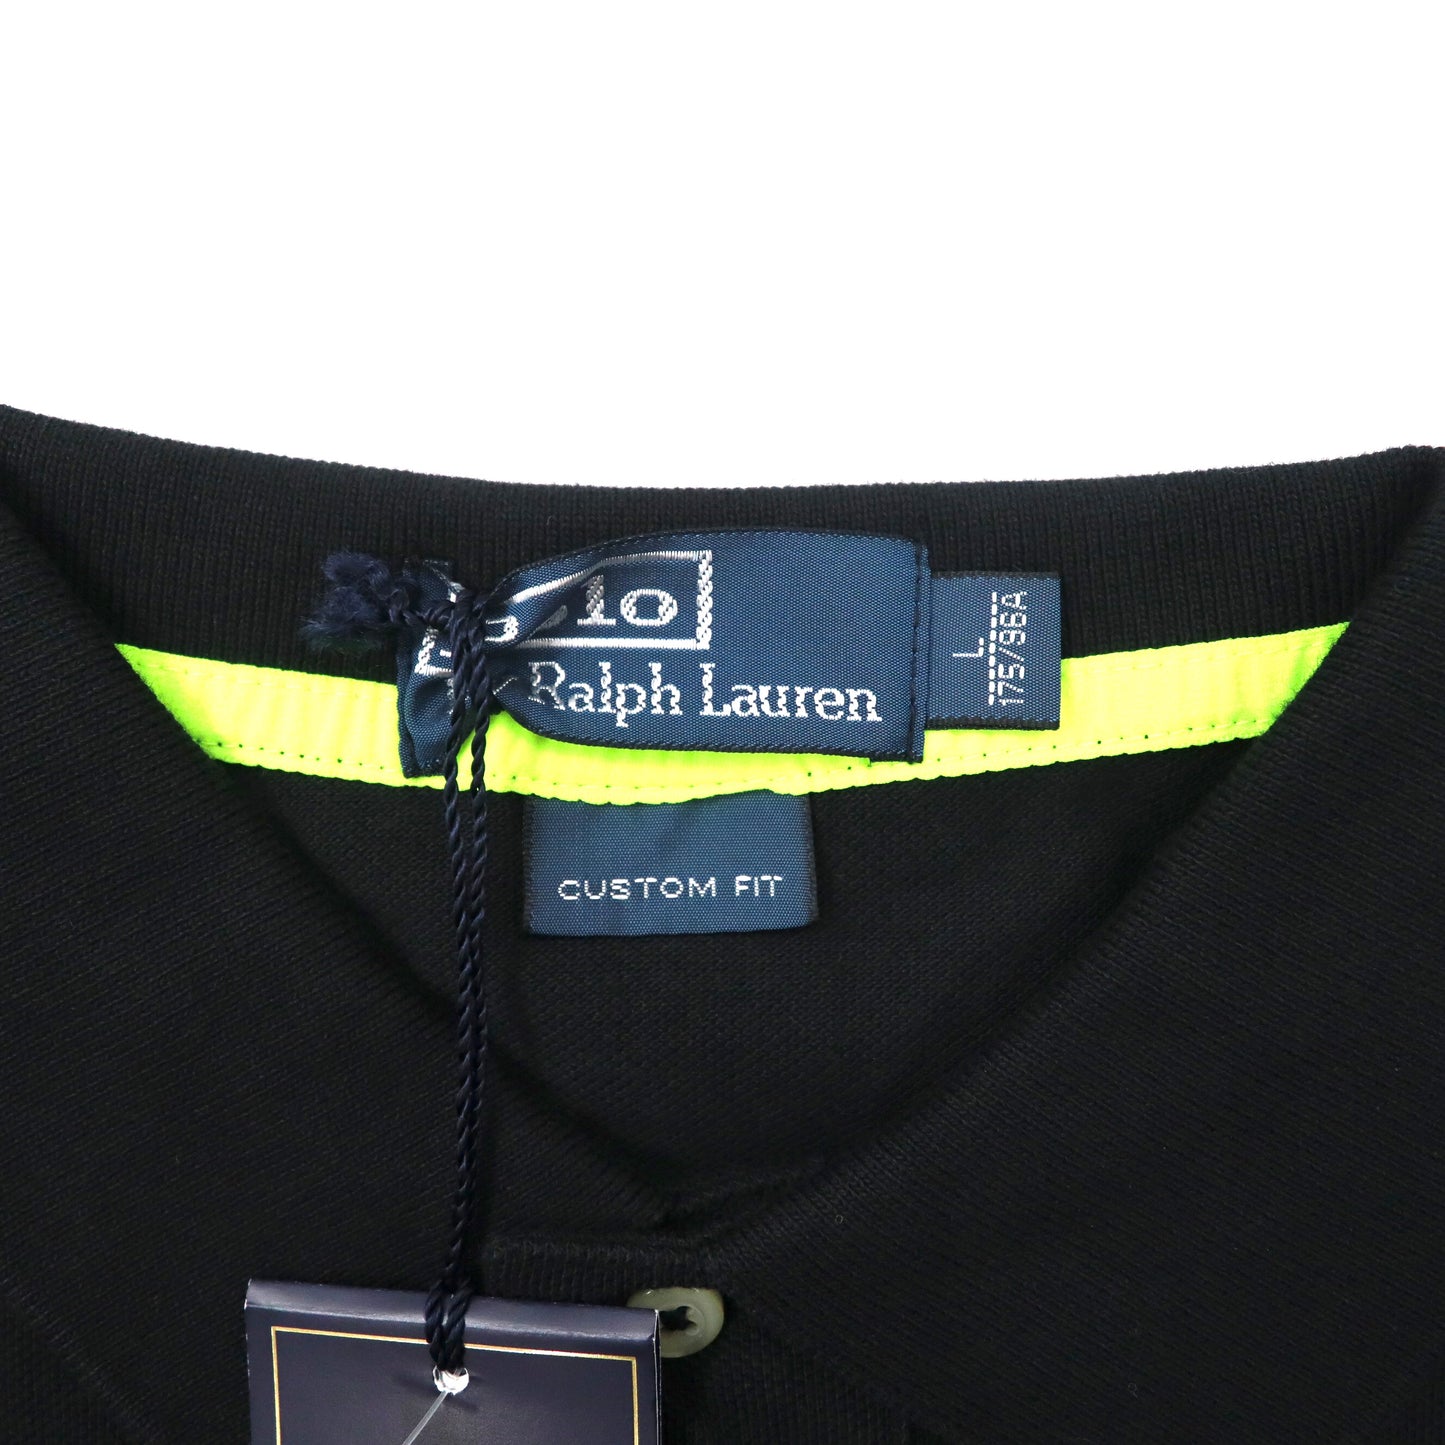 Polo by Ralph Lauren ポロシャツ L ブラック コットン ビッグポニー刺繍 ナンバリング 未使用品